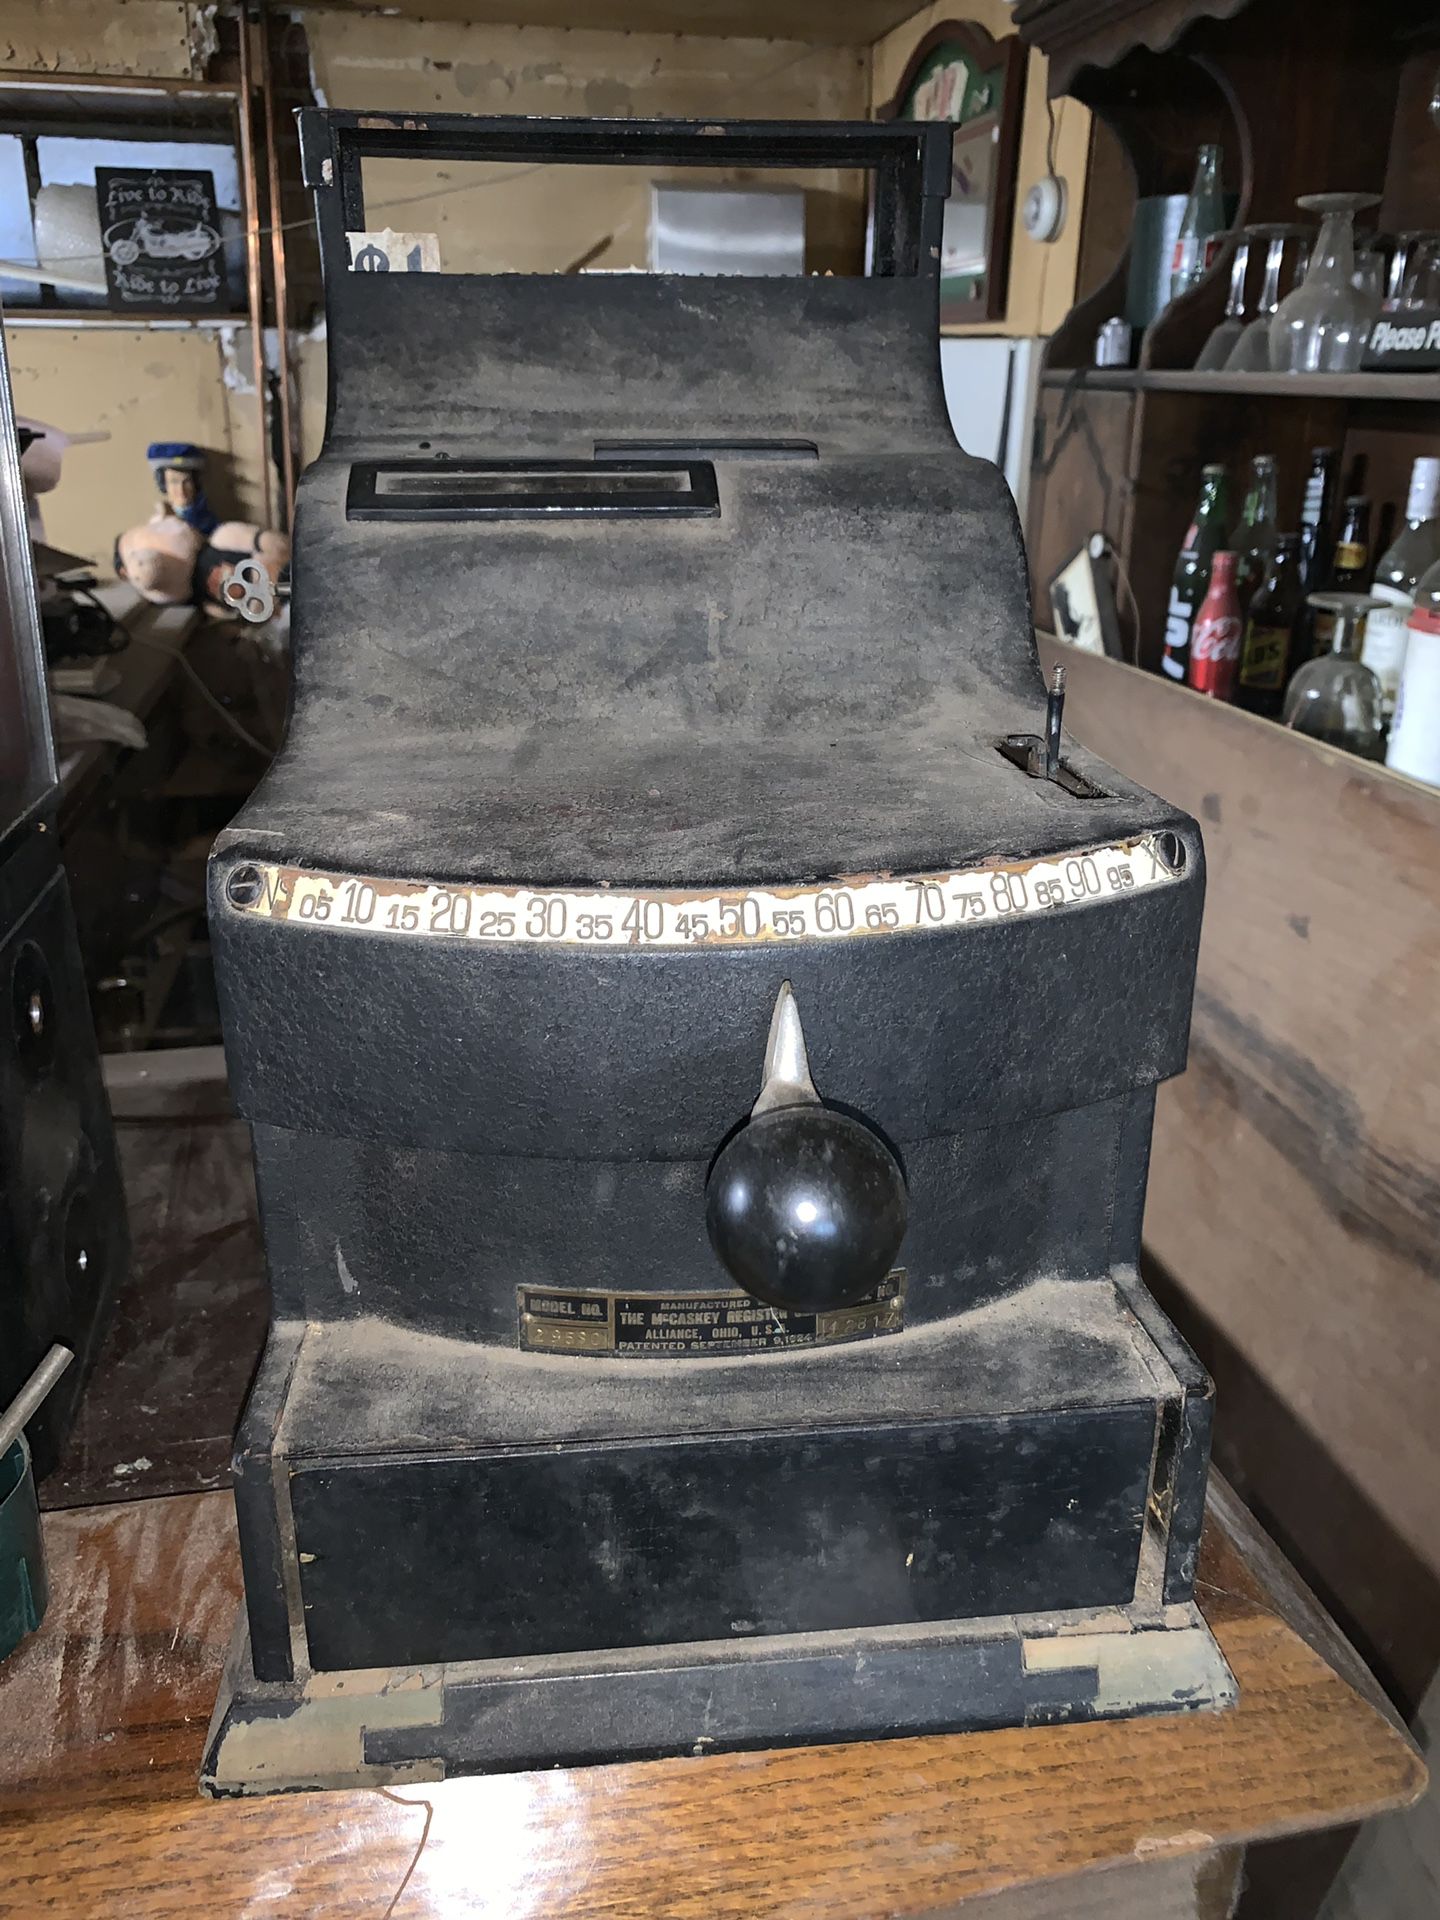 Old antique cash register